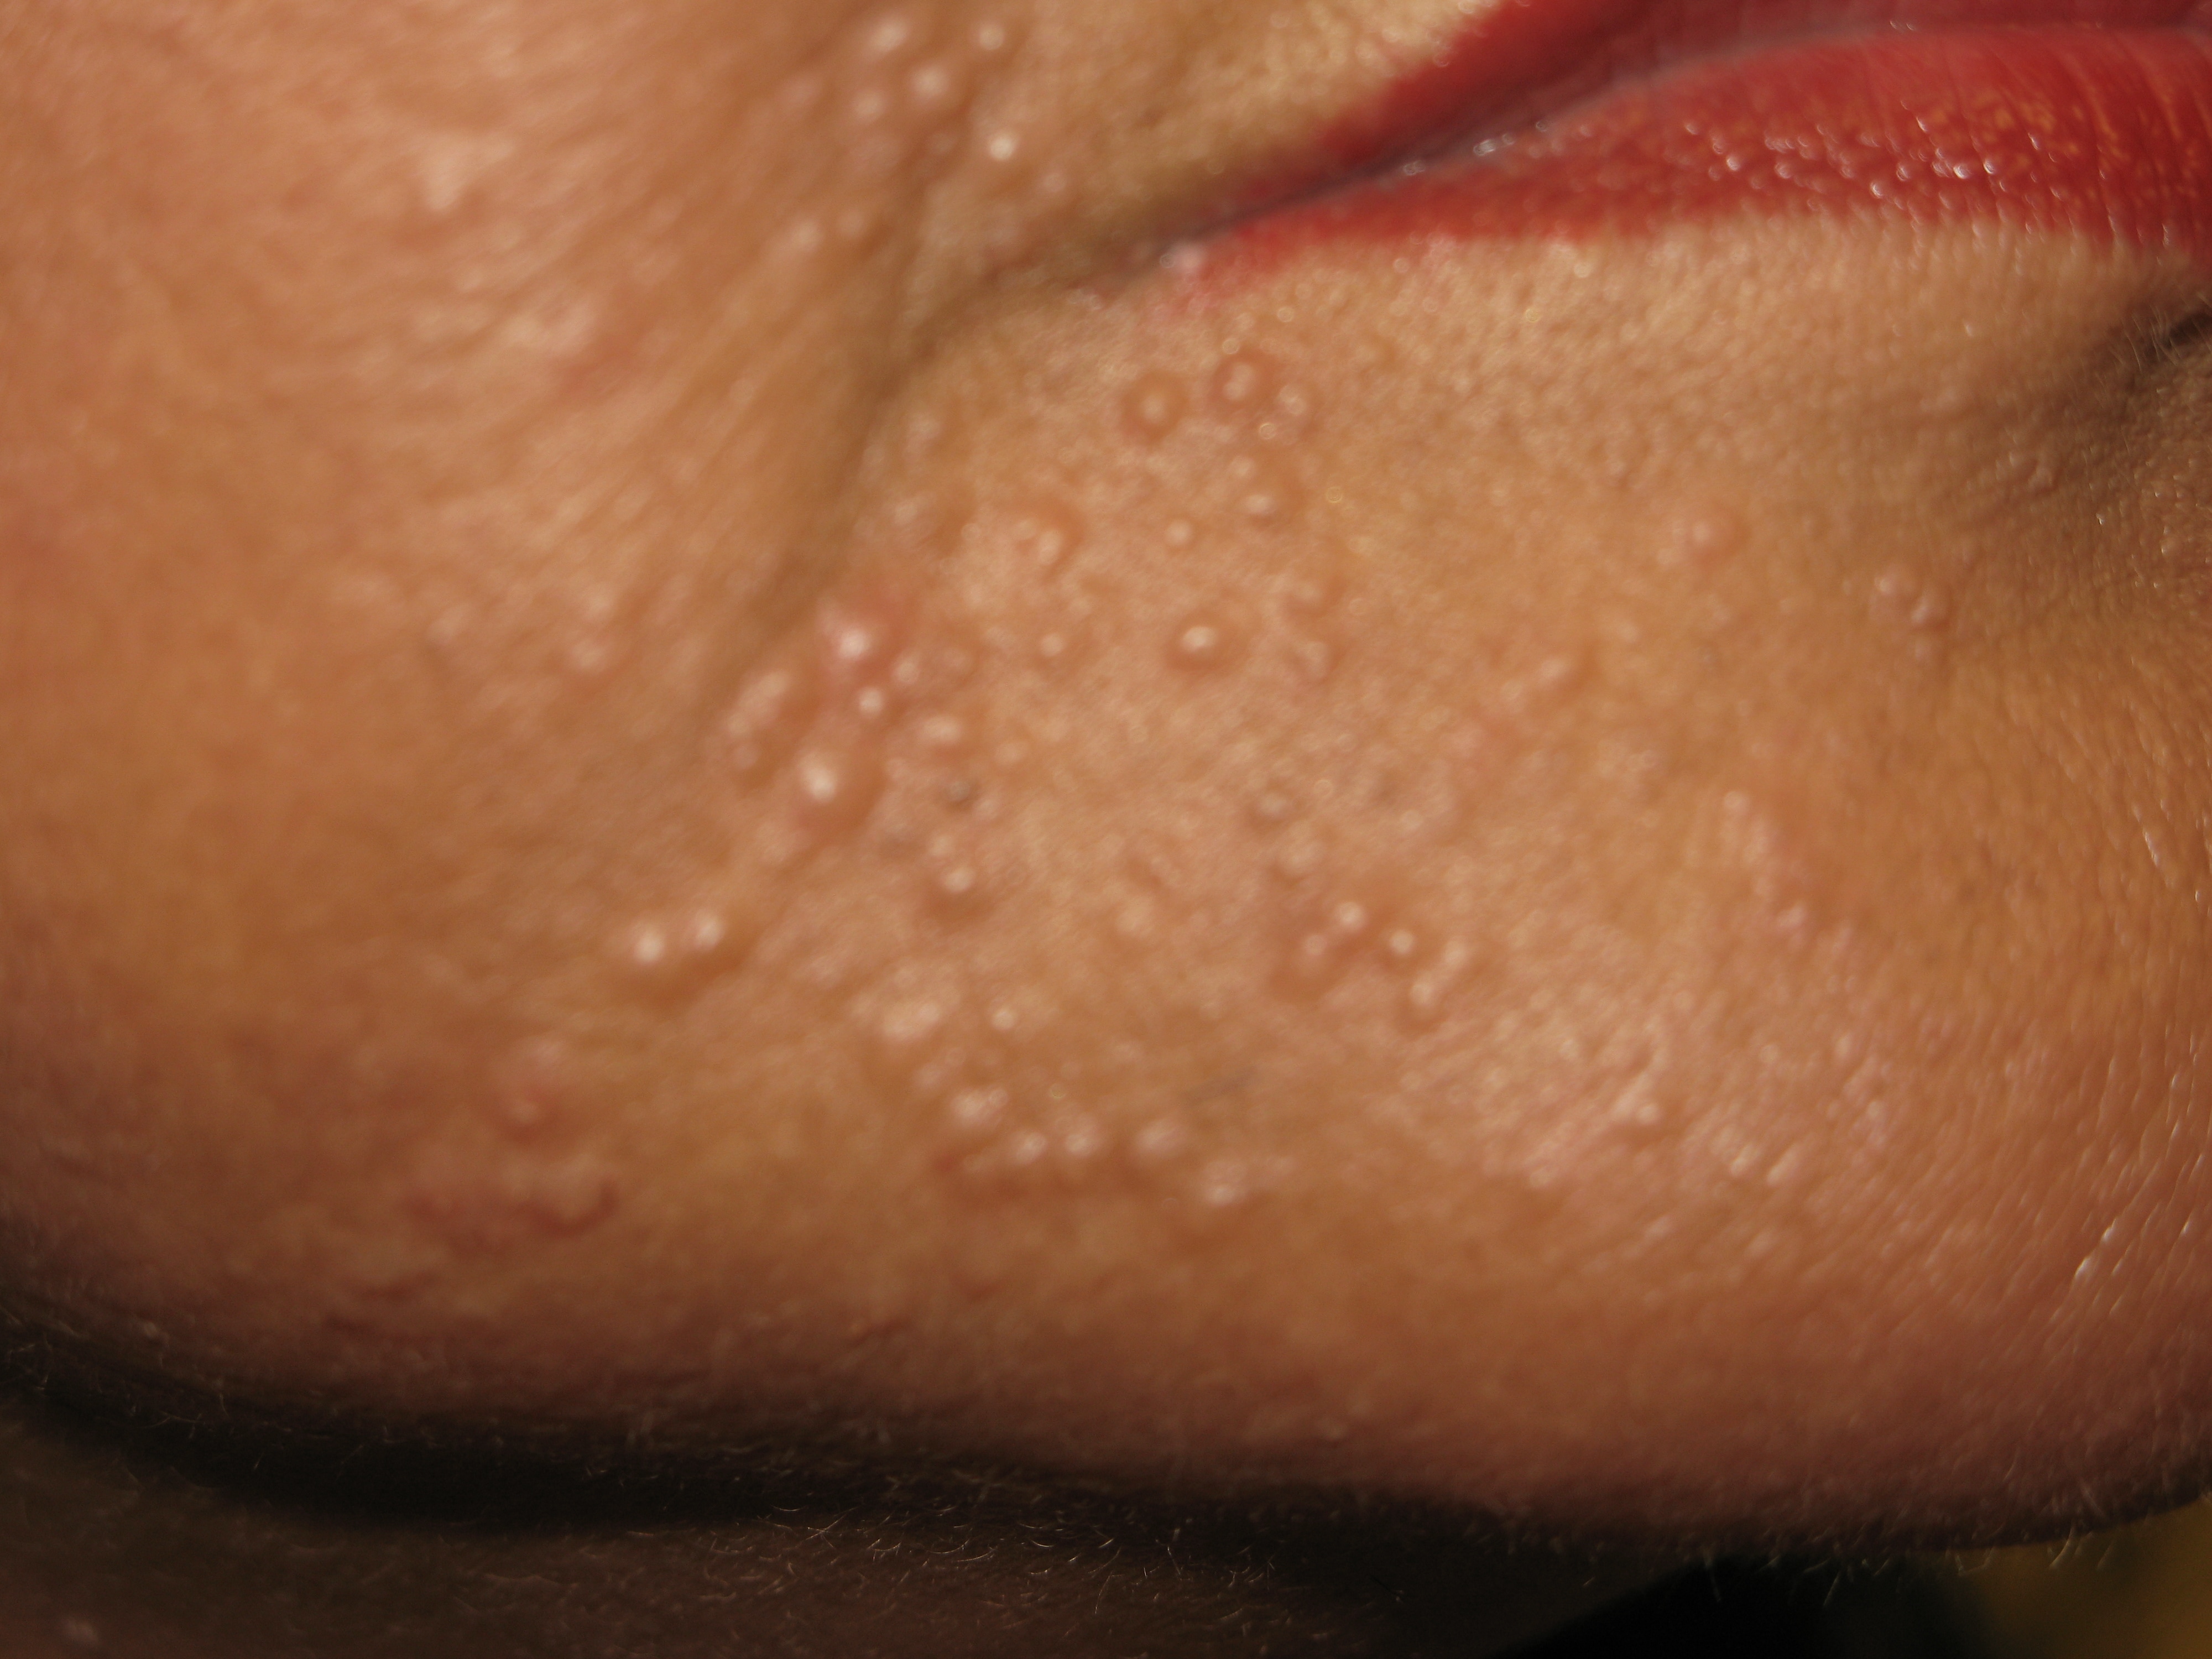 Oil acne - Wikipedia